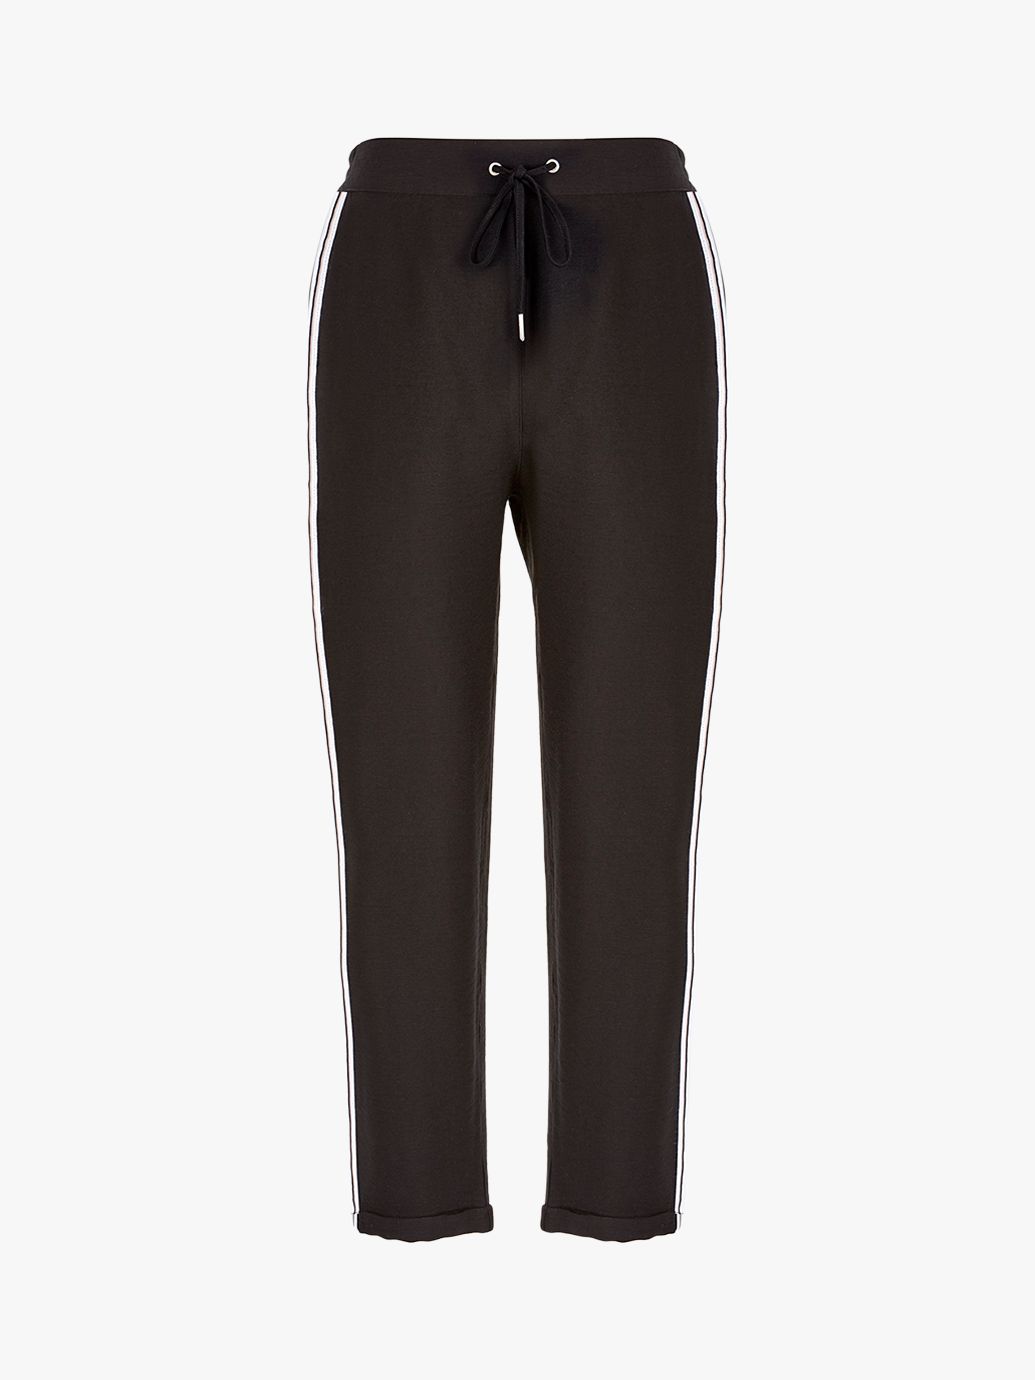 Mint Velvet Side Stripe Trousers, Black at John Lewis & Partners